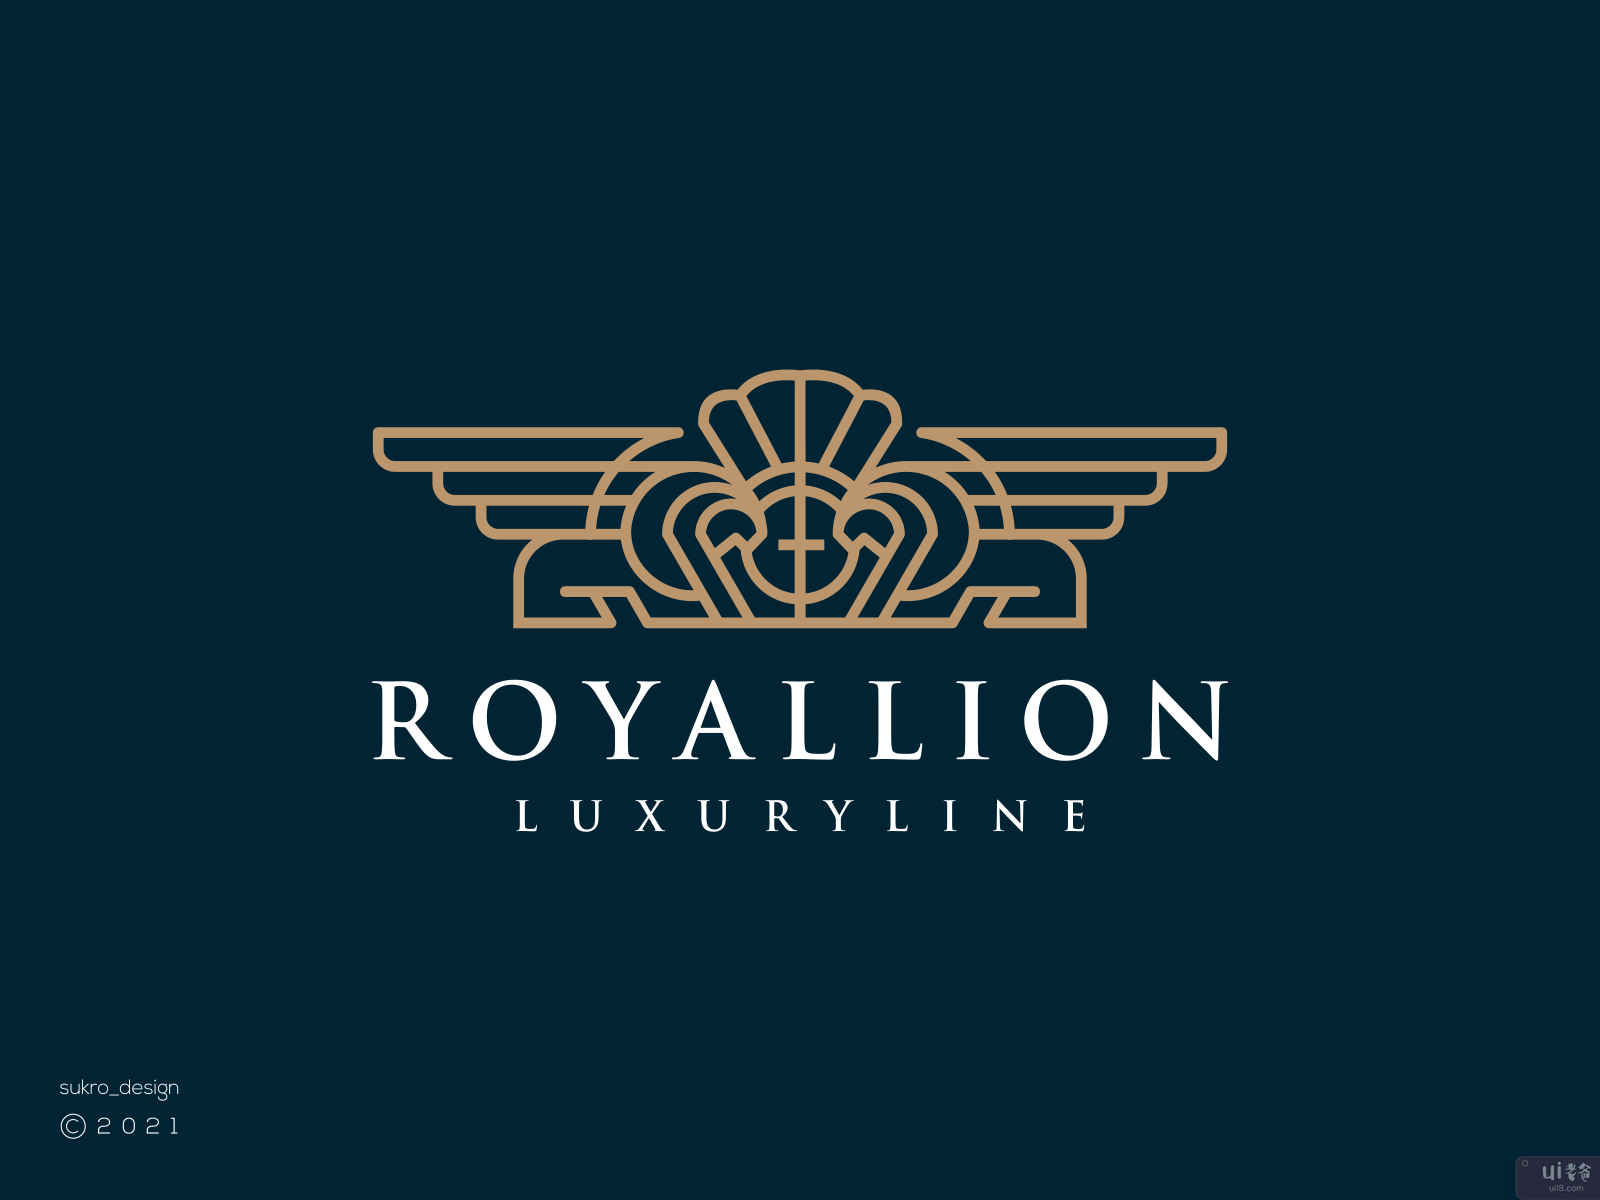 皇家联盟的标志(Royallion logo)插图1